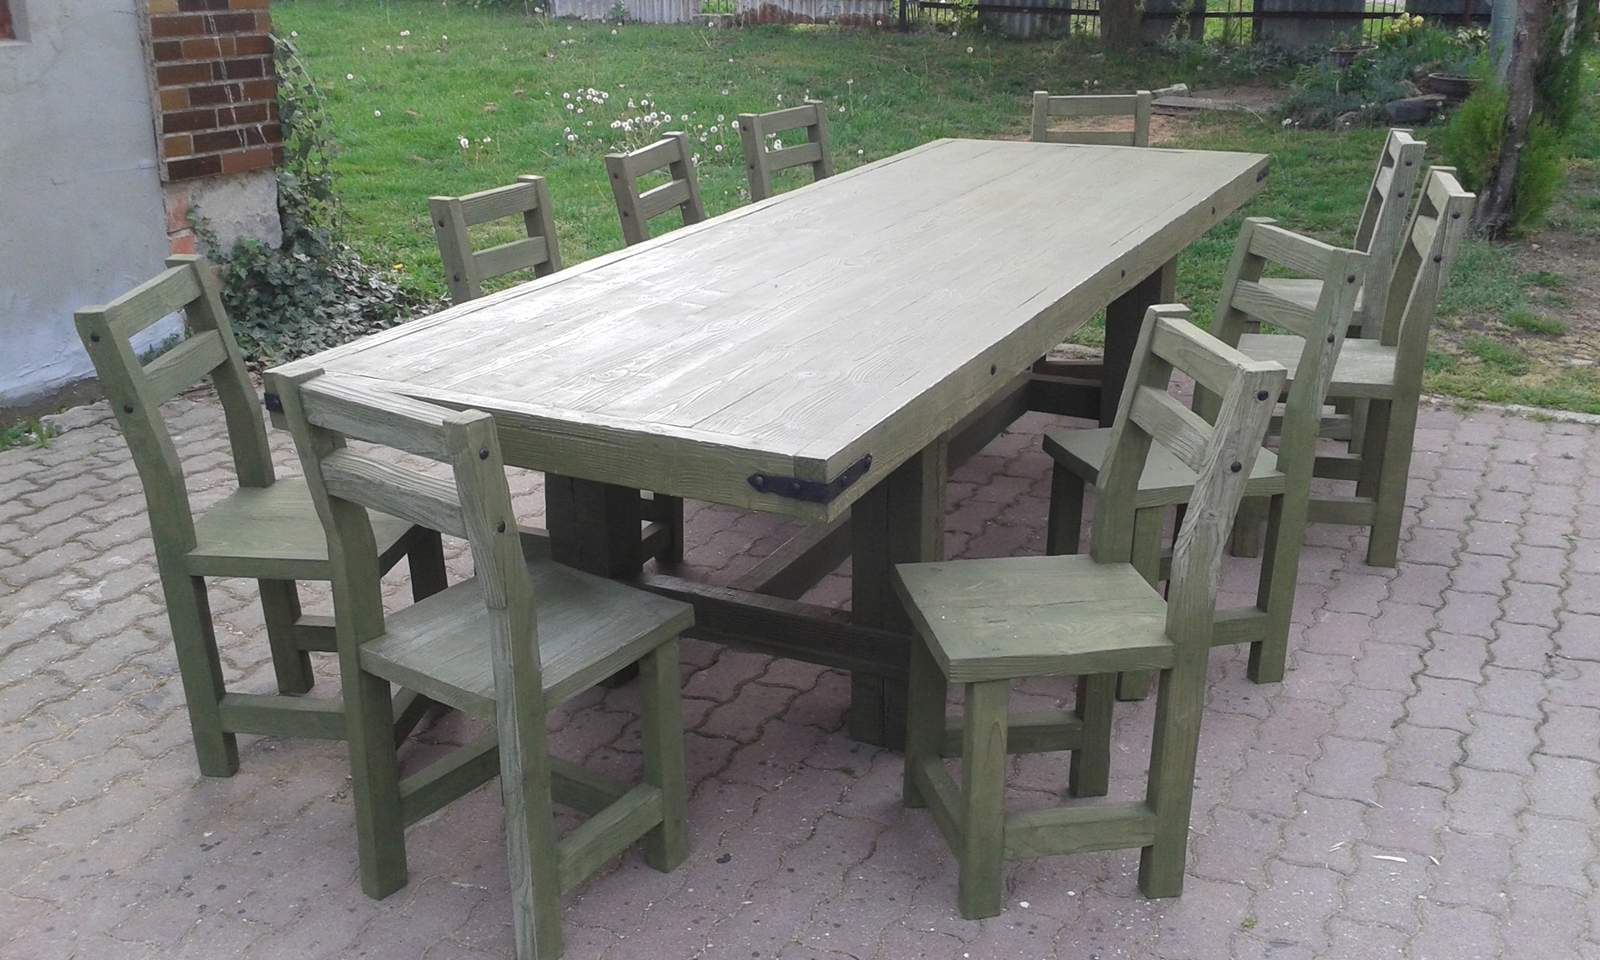 Stôl + stoličky